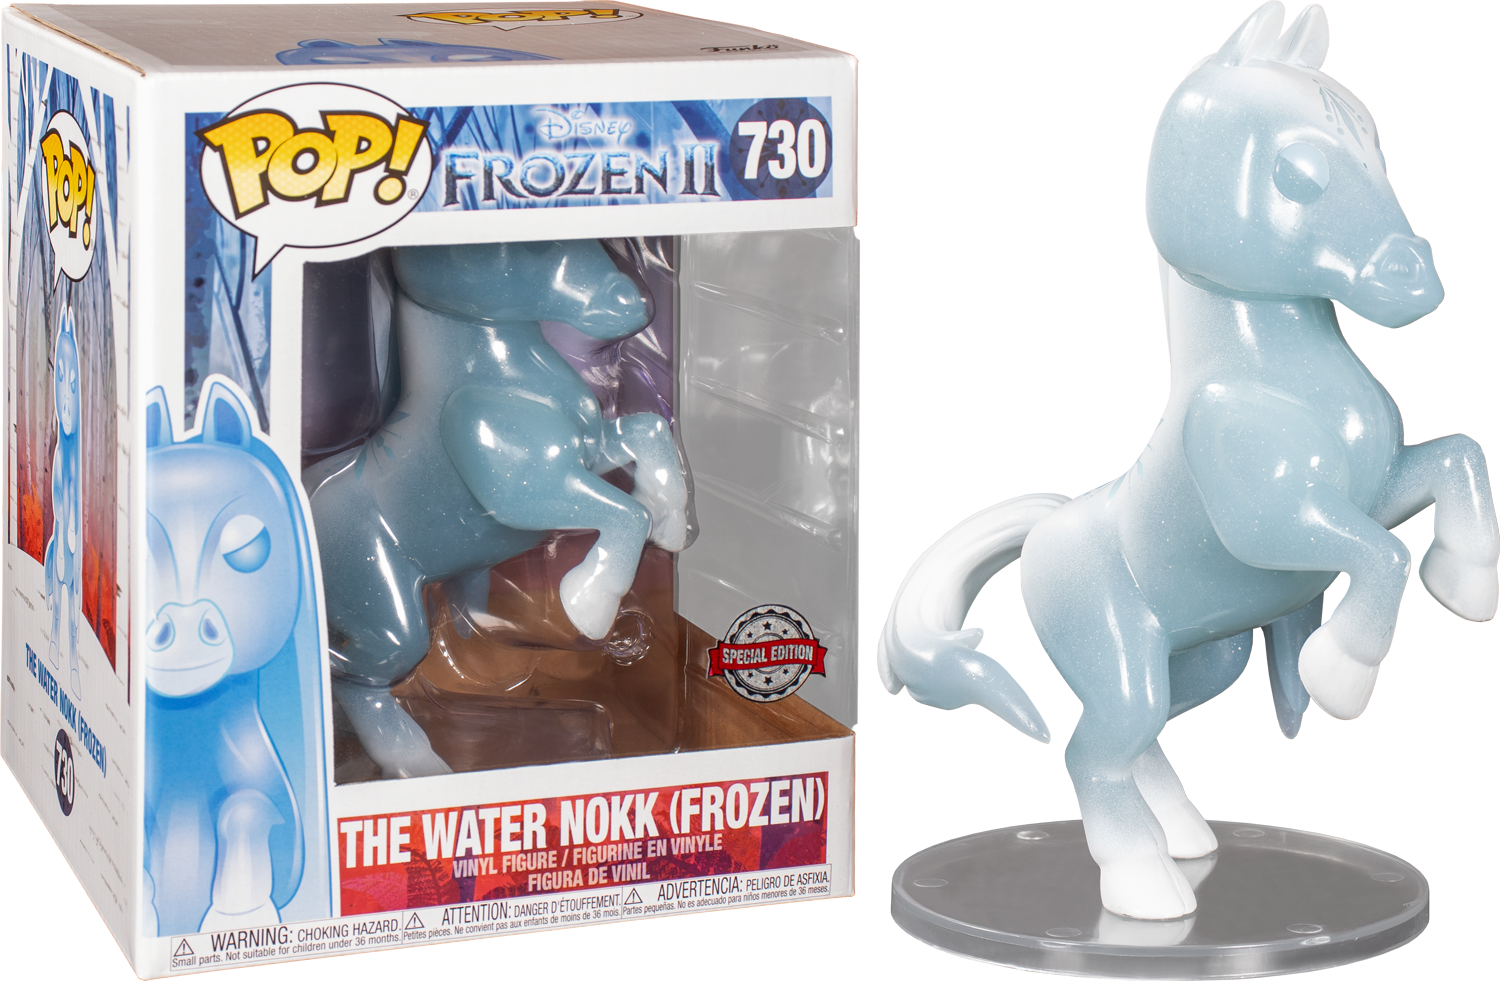 Funko Pop! Frozen 2 - The Water Nokk Frozen Crystal 6" Super Sized #730